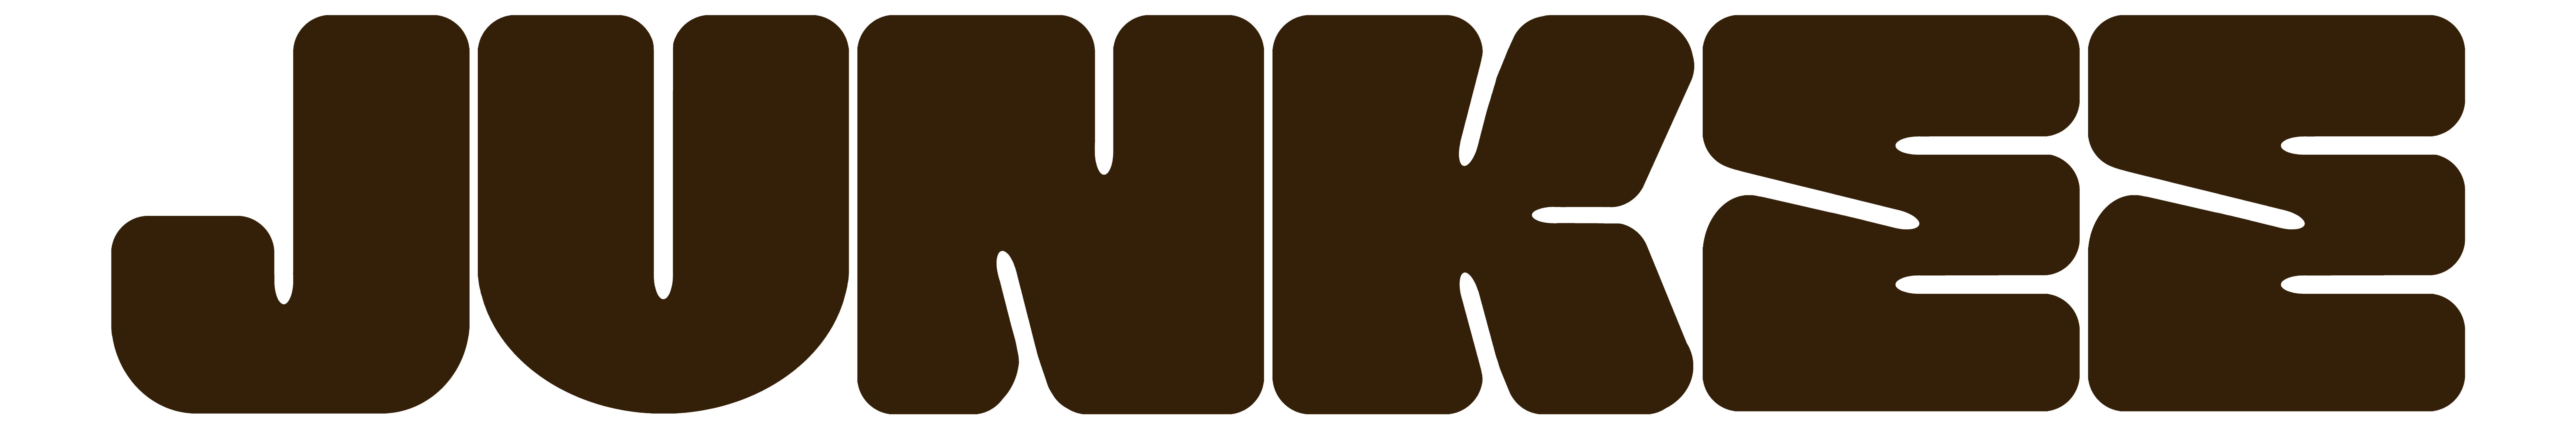 Junkee logo